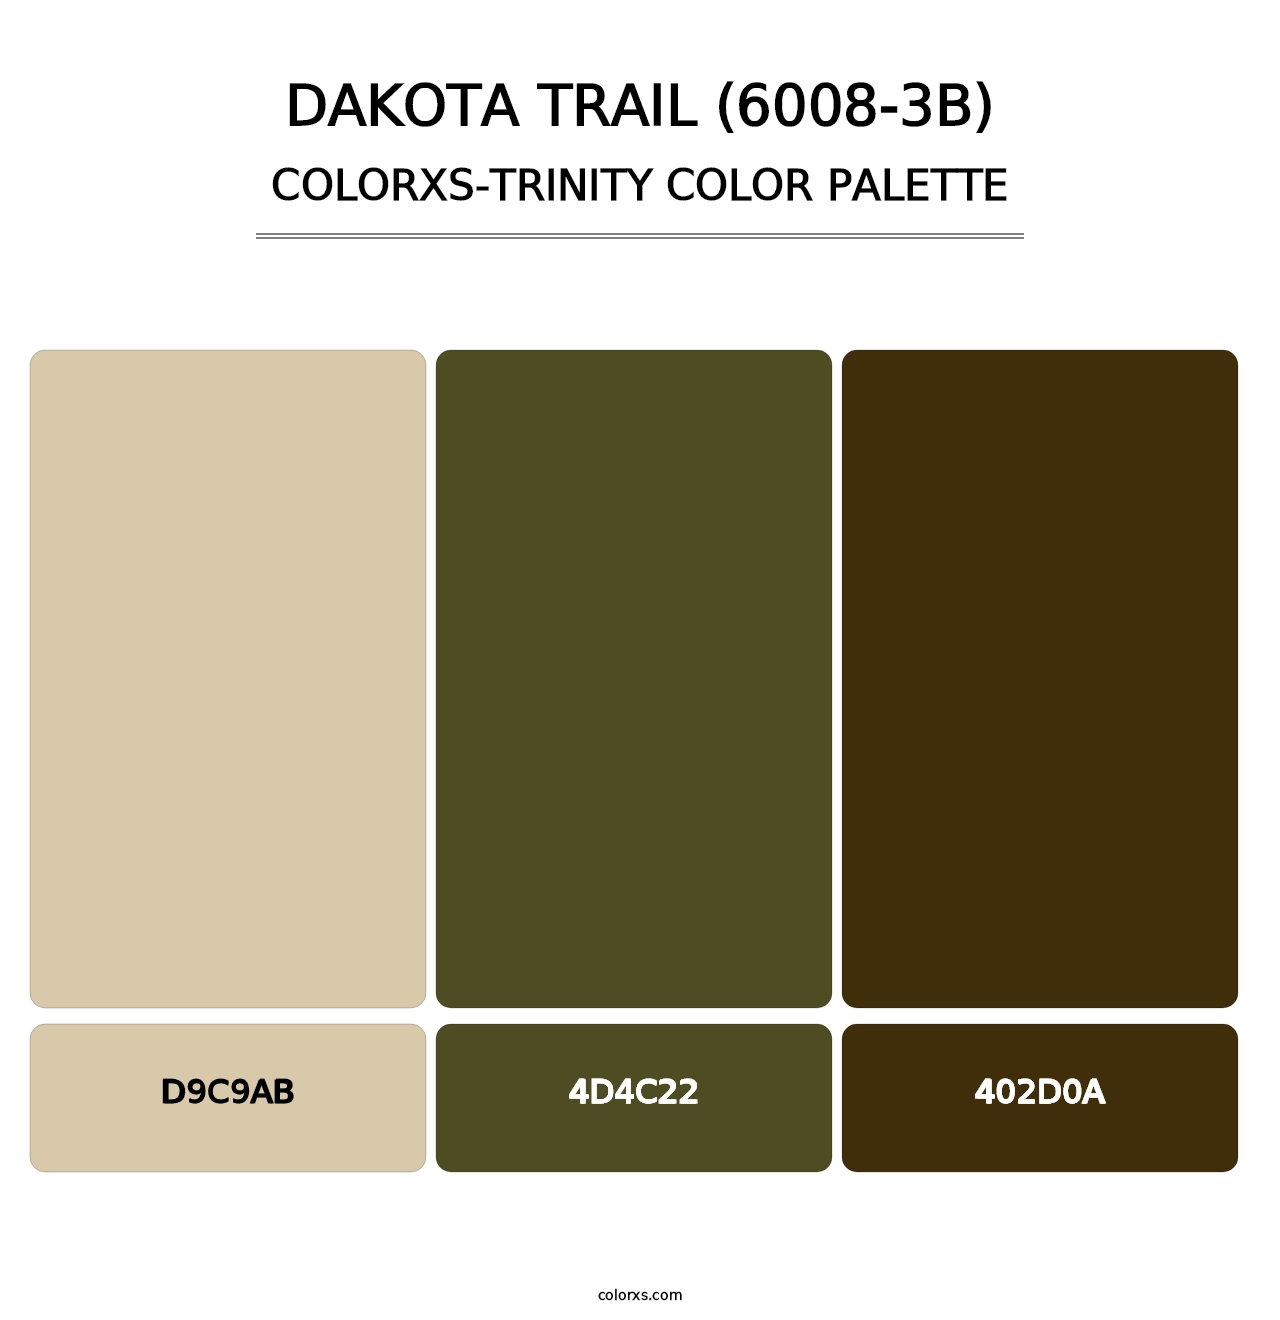 Dakota Trail (6008-3B) - Colorxs Trinity Palette